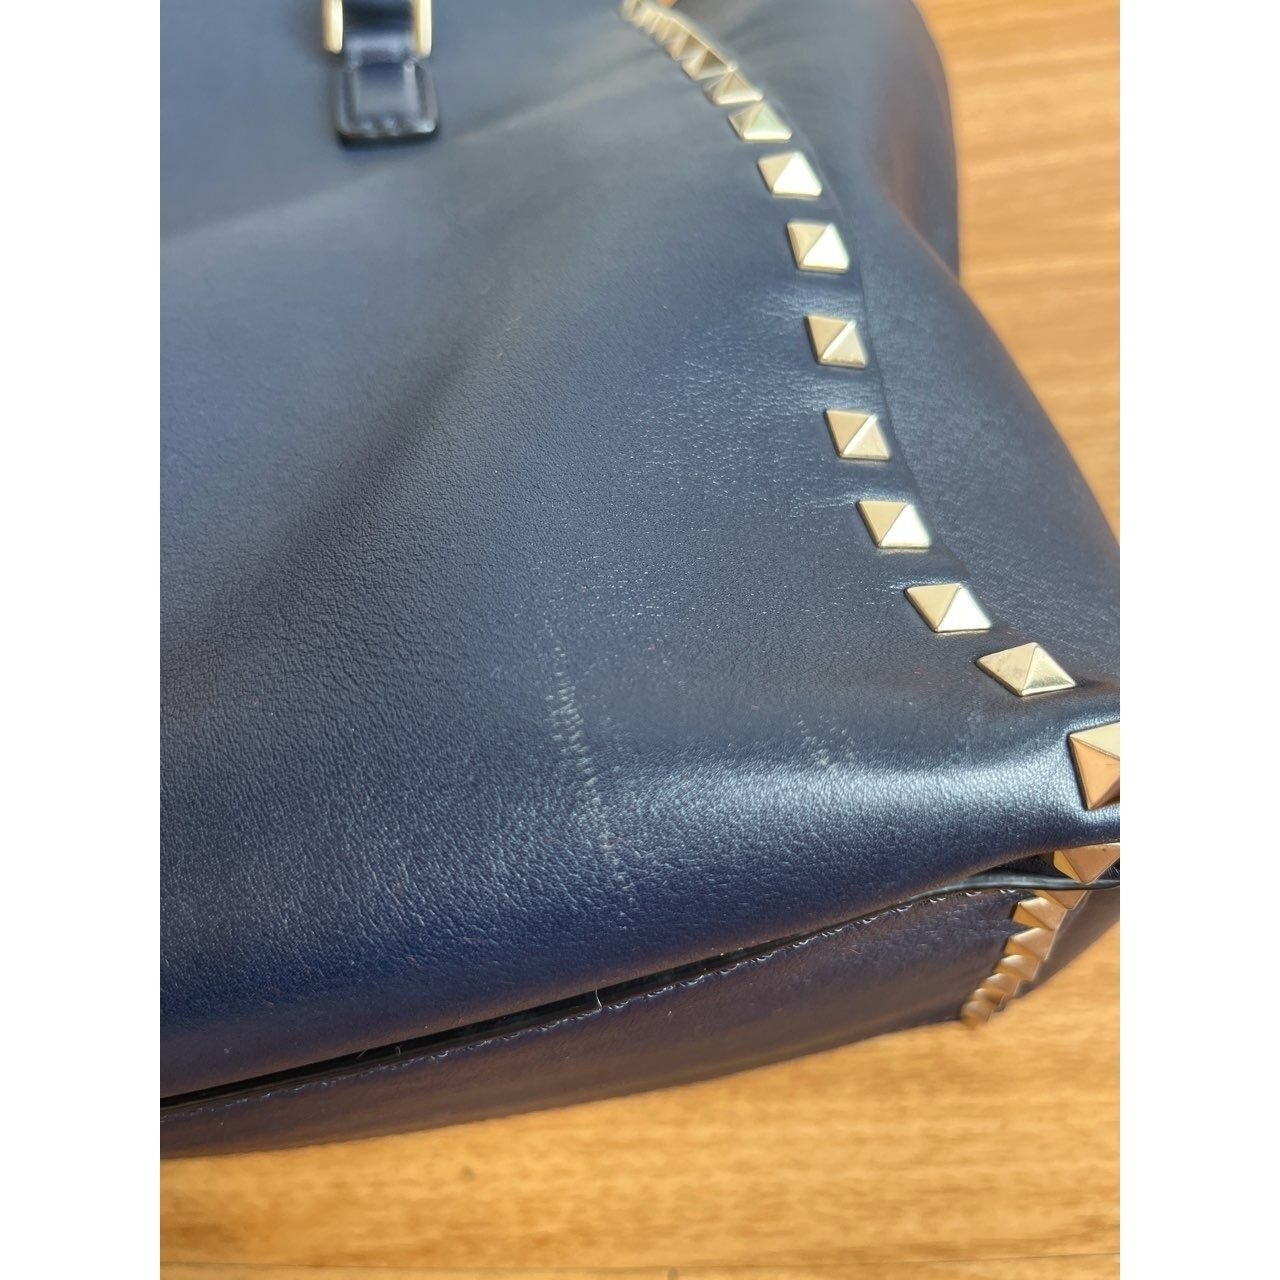 Valentino Garavani Vitello Rockstud Double Handle Dark Blue Handbag